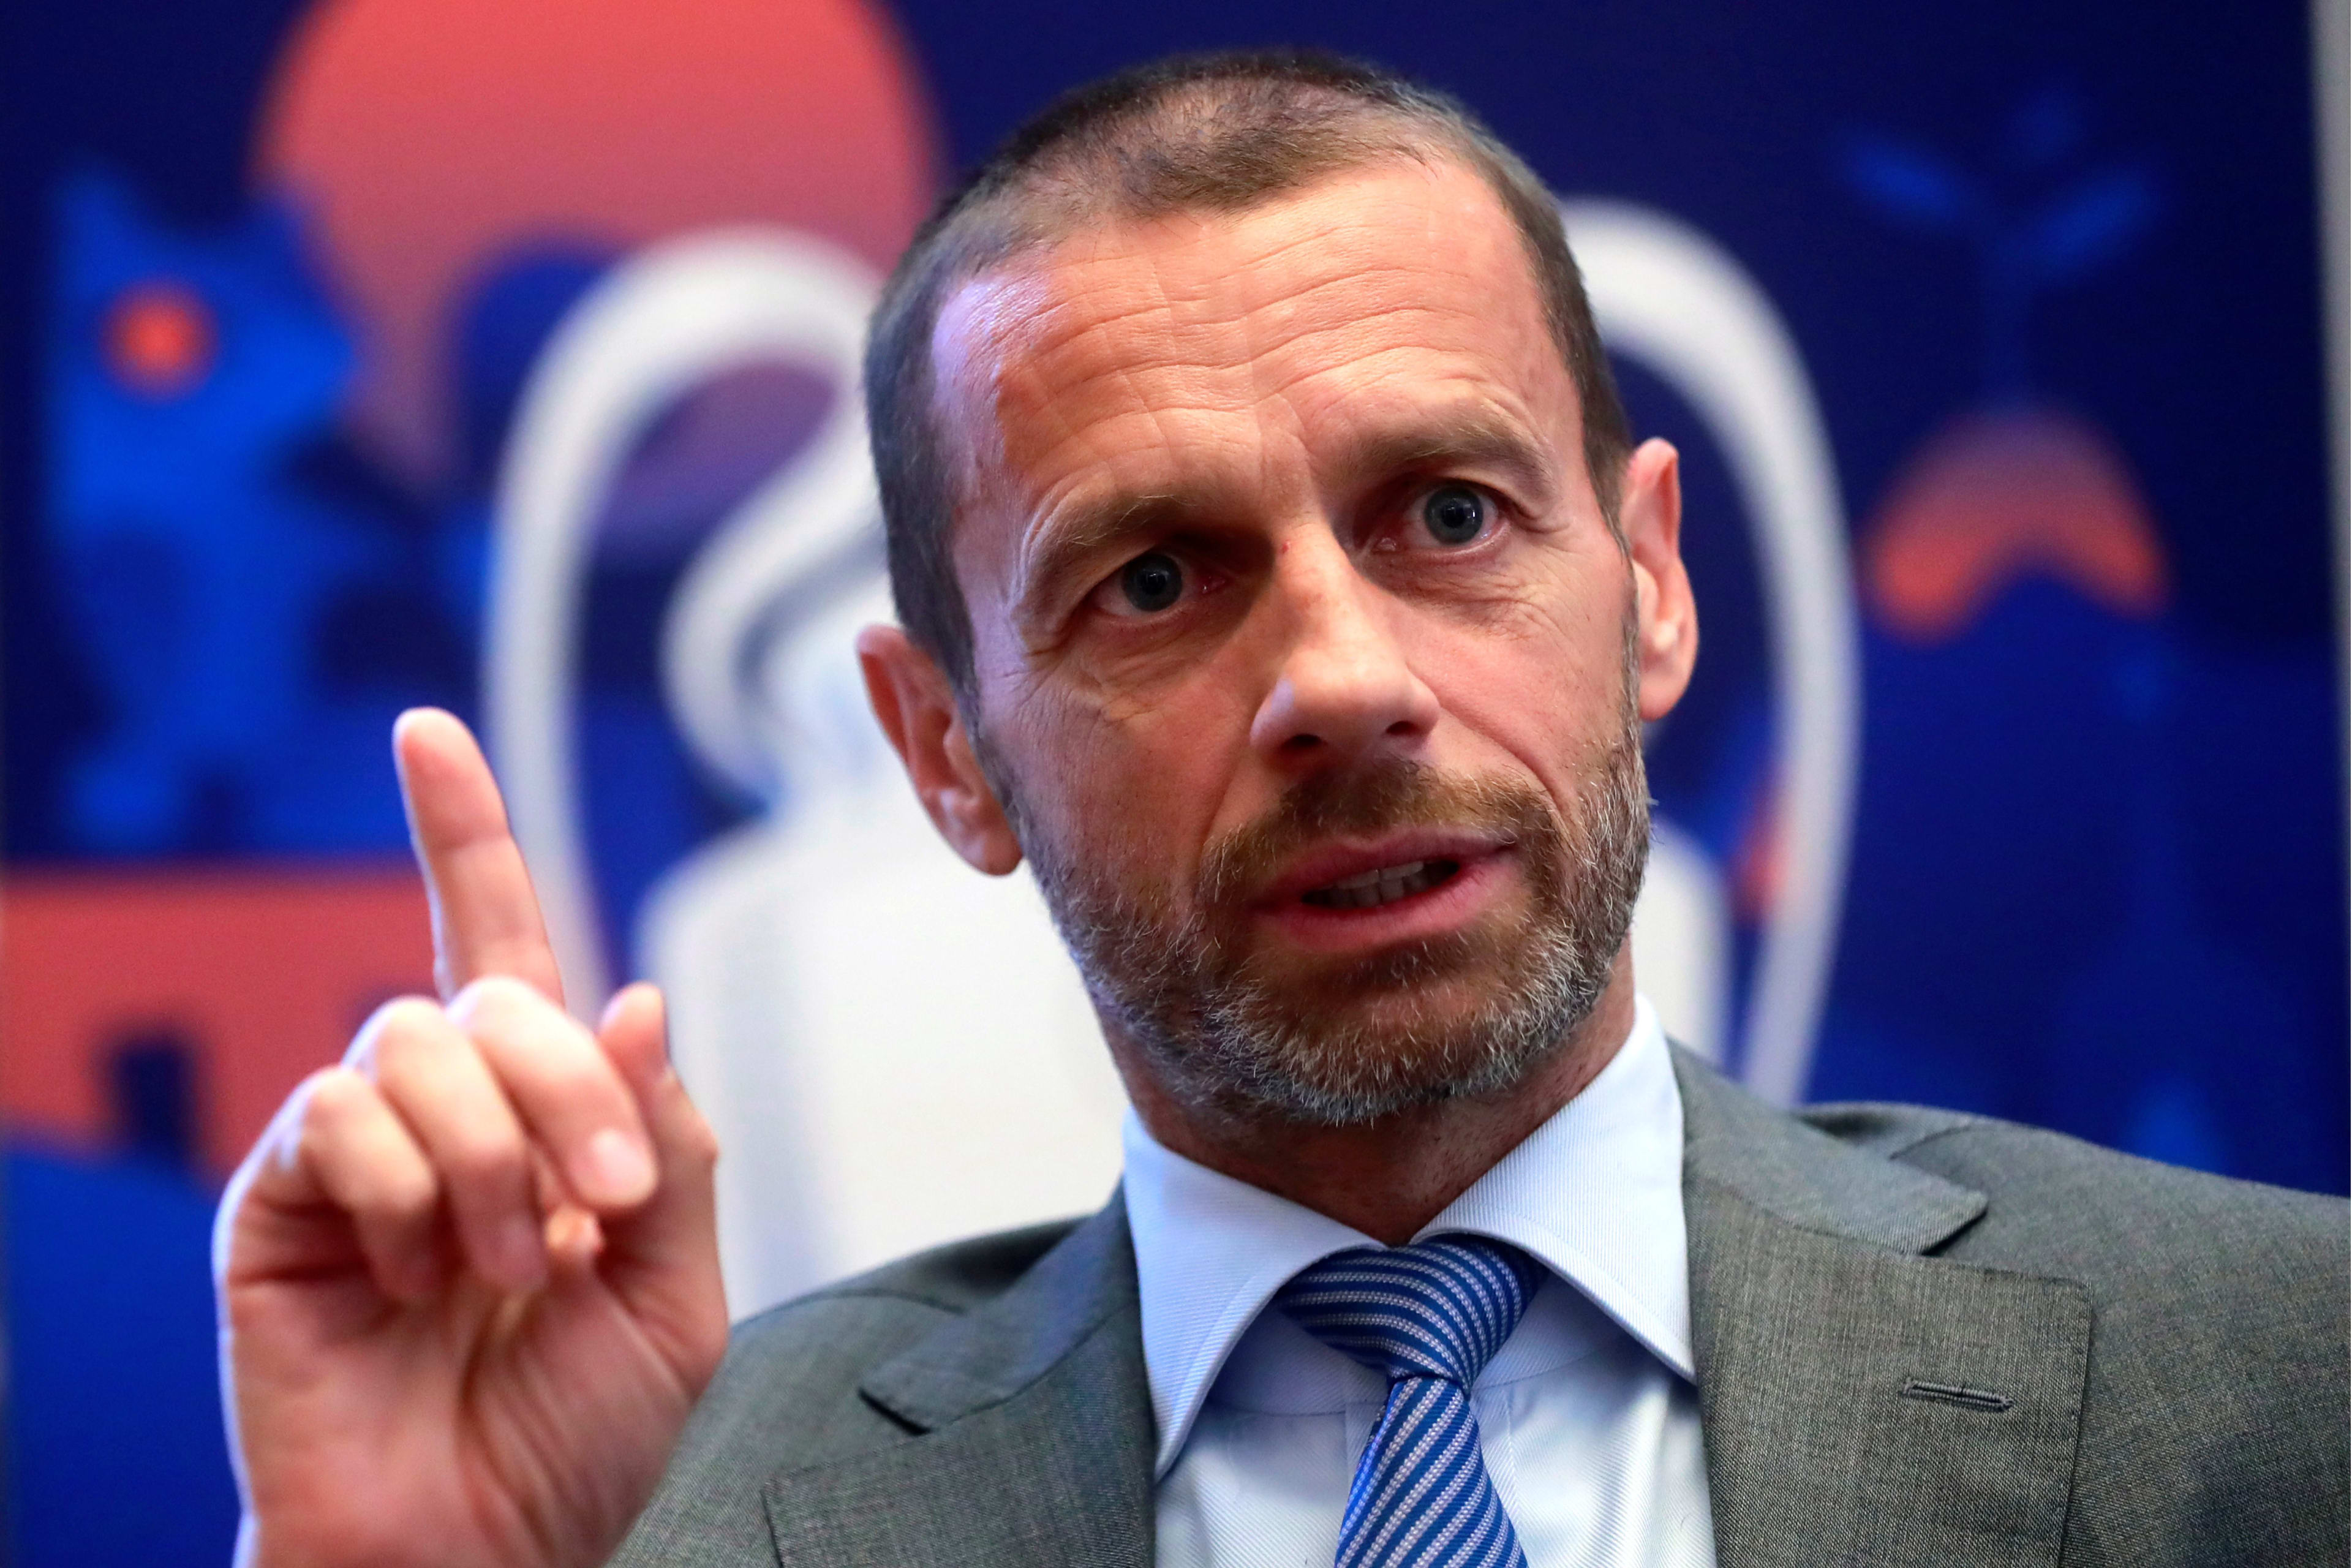 UEFA: 'Problemen rond racisme zit in onze samenleving'